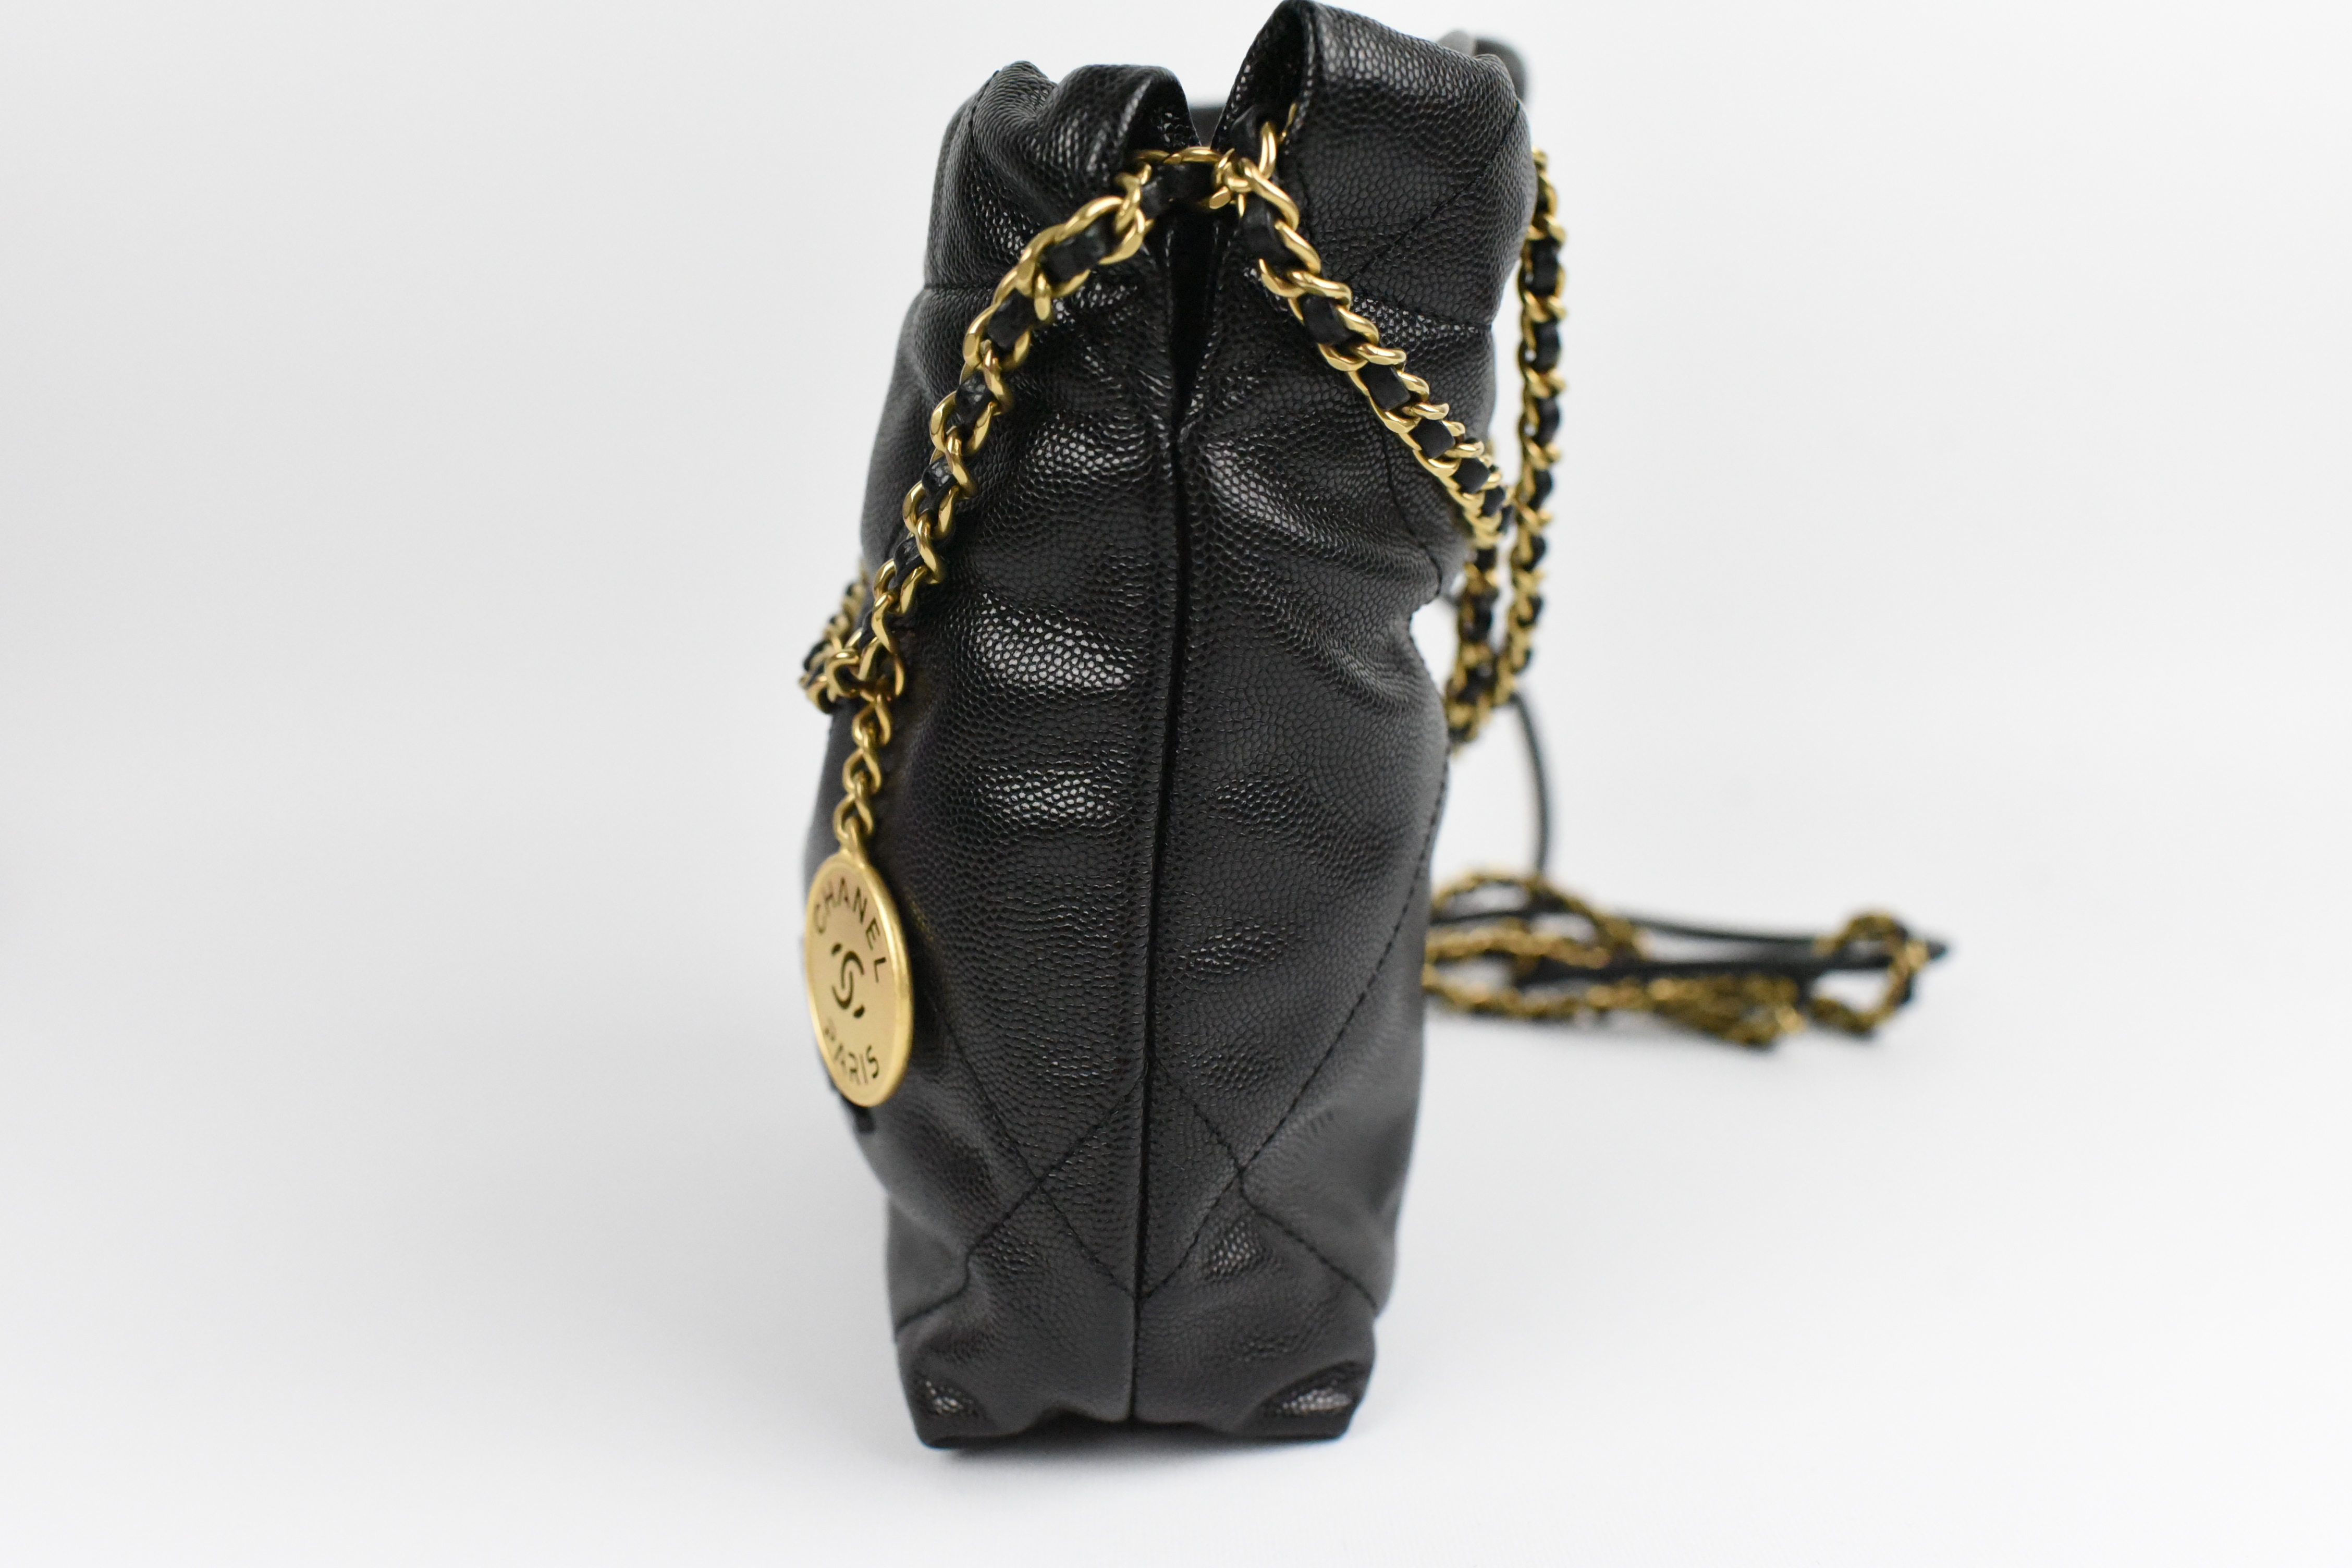 Chanel 22 Mini, Black Caviar Leather With Gold Hardware, New in Box GA003 -  Julia Rose Boston